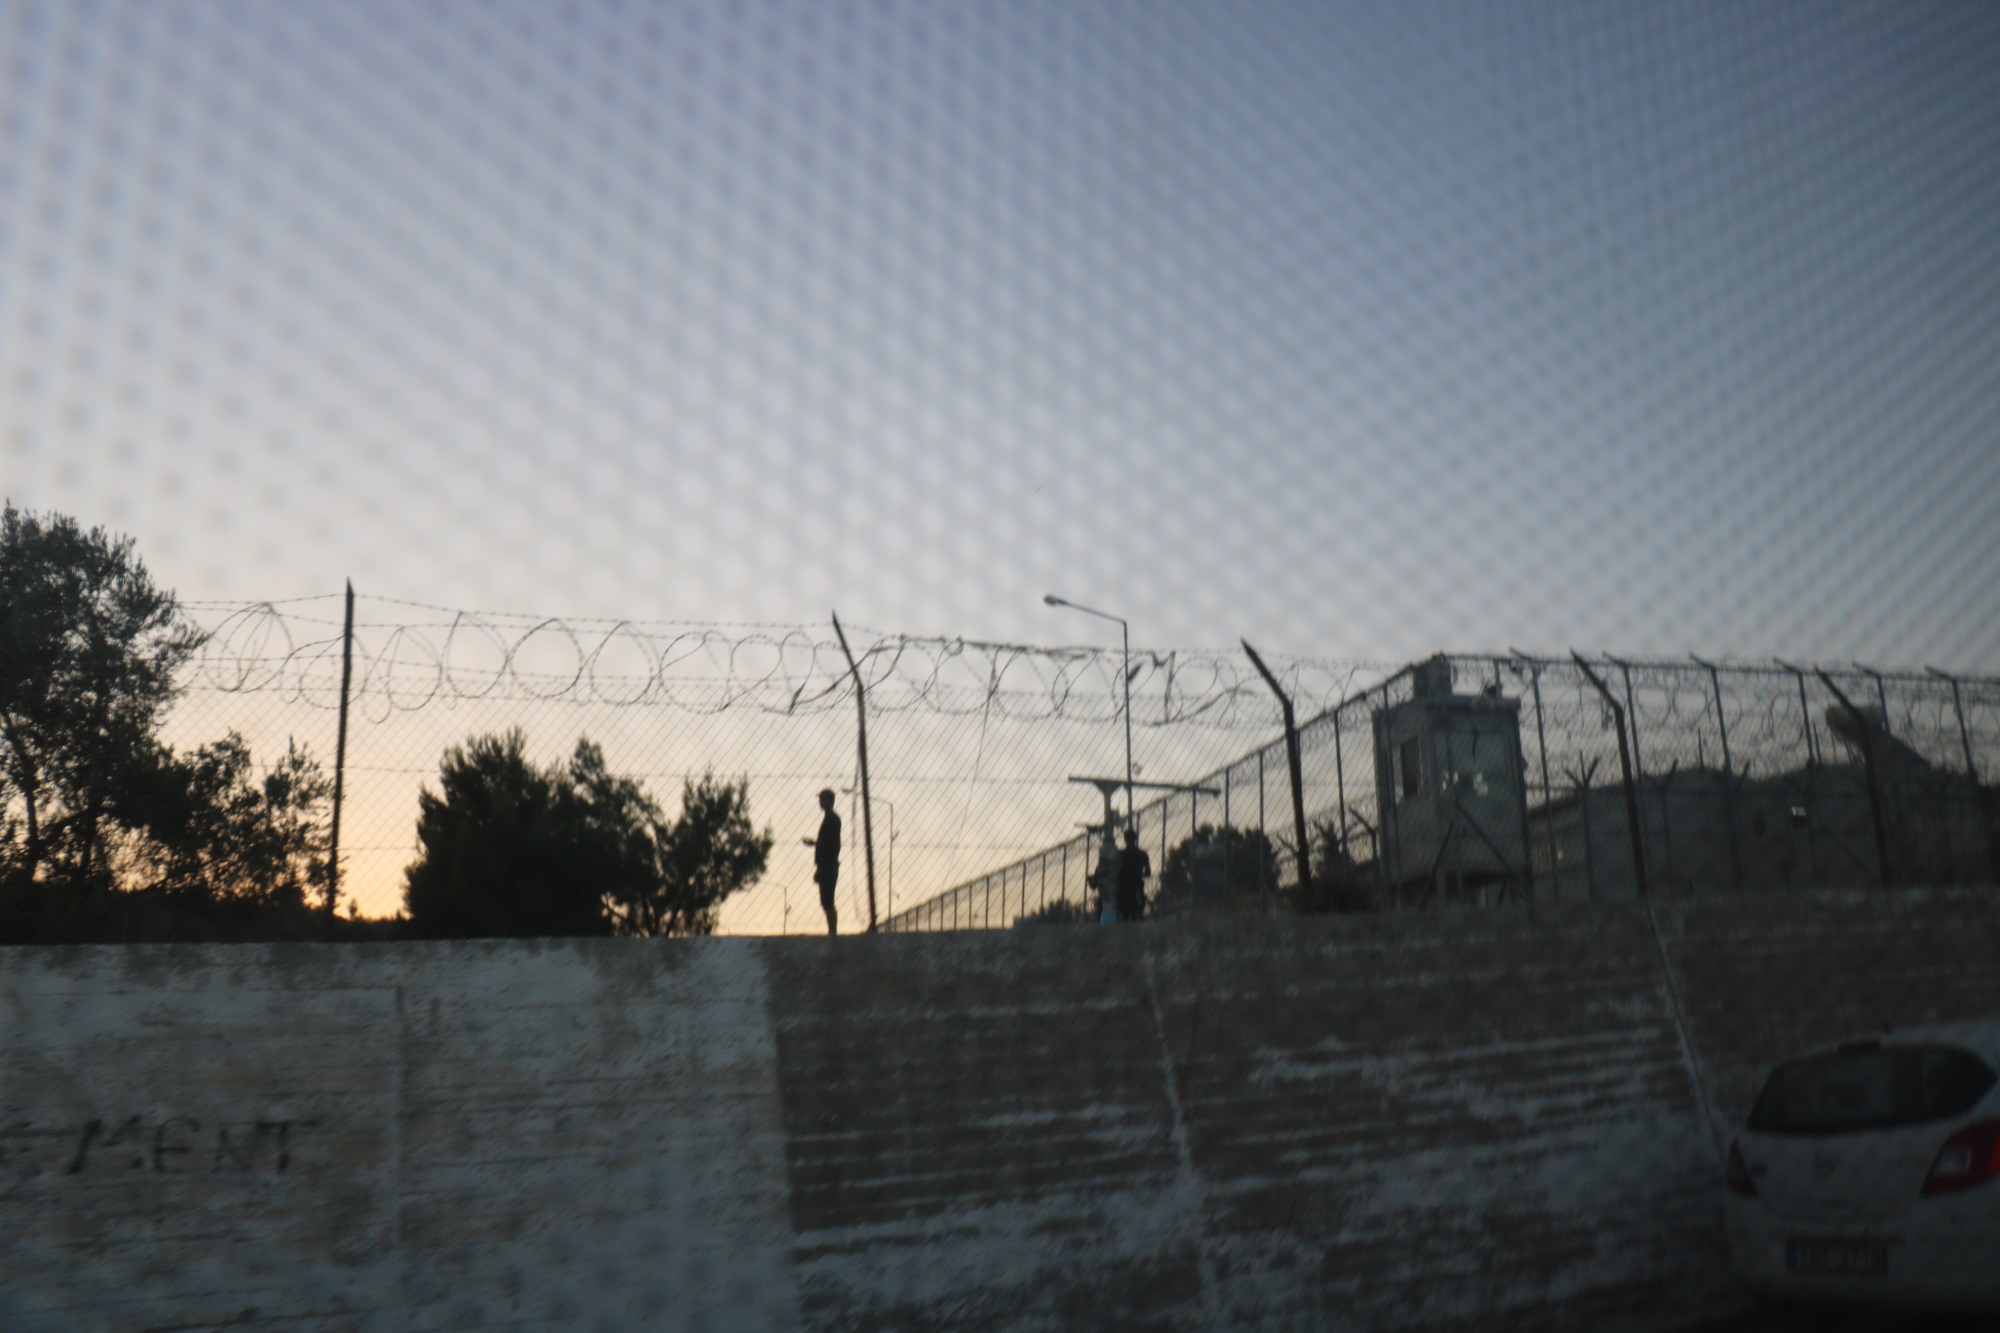 Le camp de Moria sur l'île de Lesbos abrite également une prison.